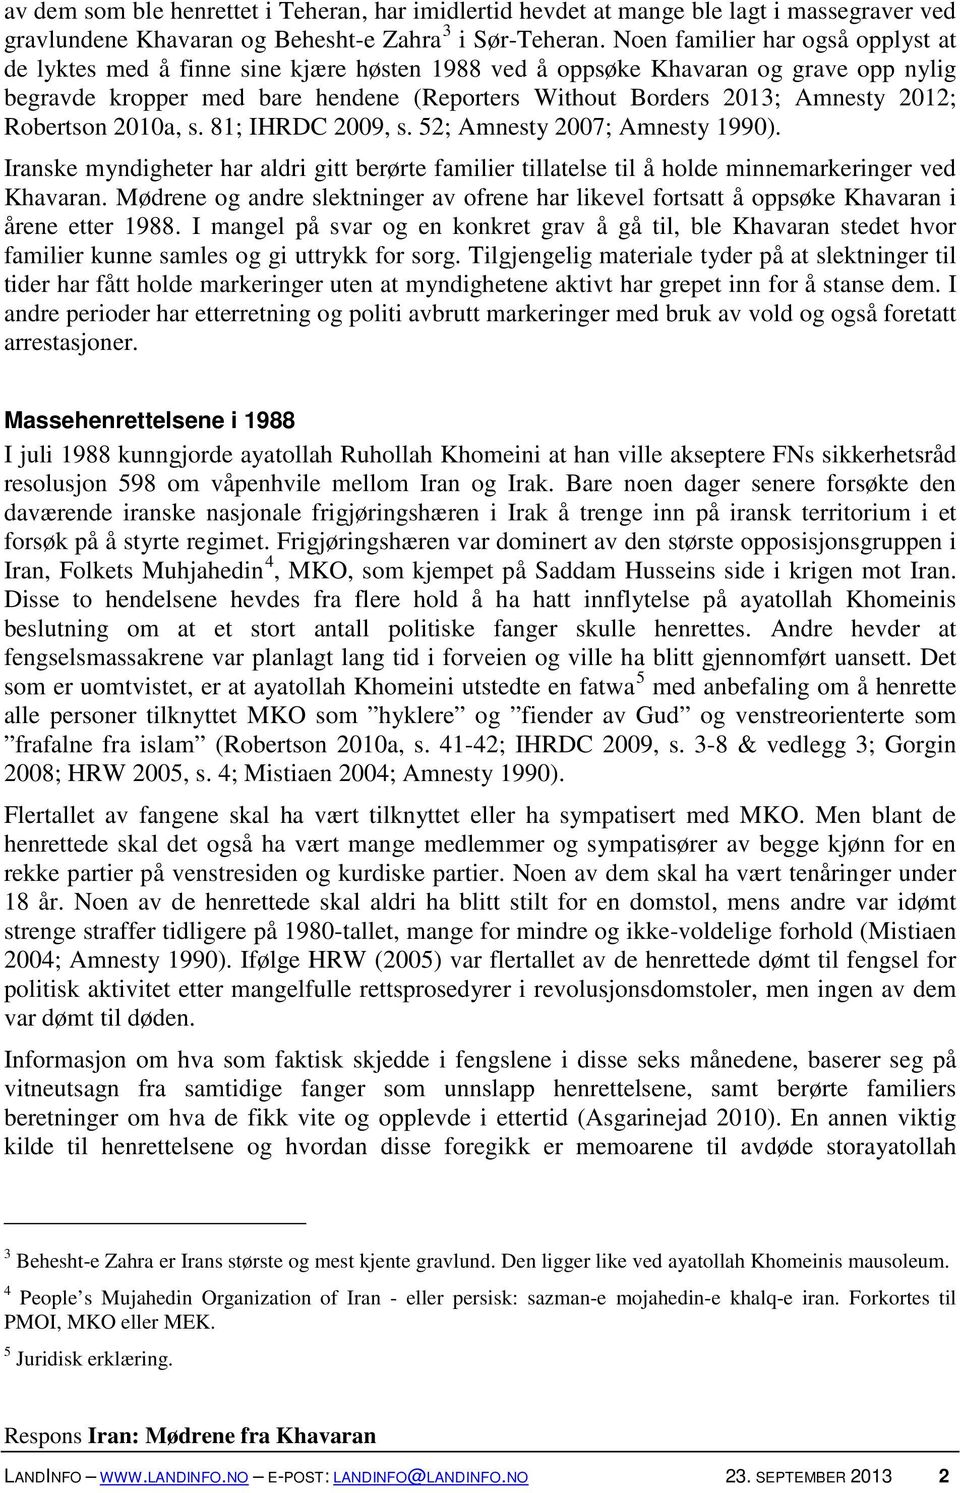 2012; Robertson 2010a, s. 81; IHRDC 2009, s. 52; Amnesty 2007; Amnesty 1990). Iranske myndigheter har aldri gitt berørte familier tillatelse til å holde minnemarkeringer ved Khavaran.